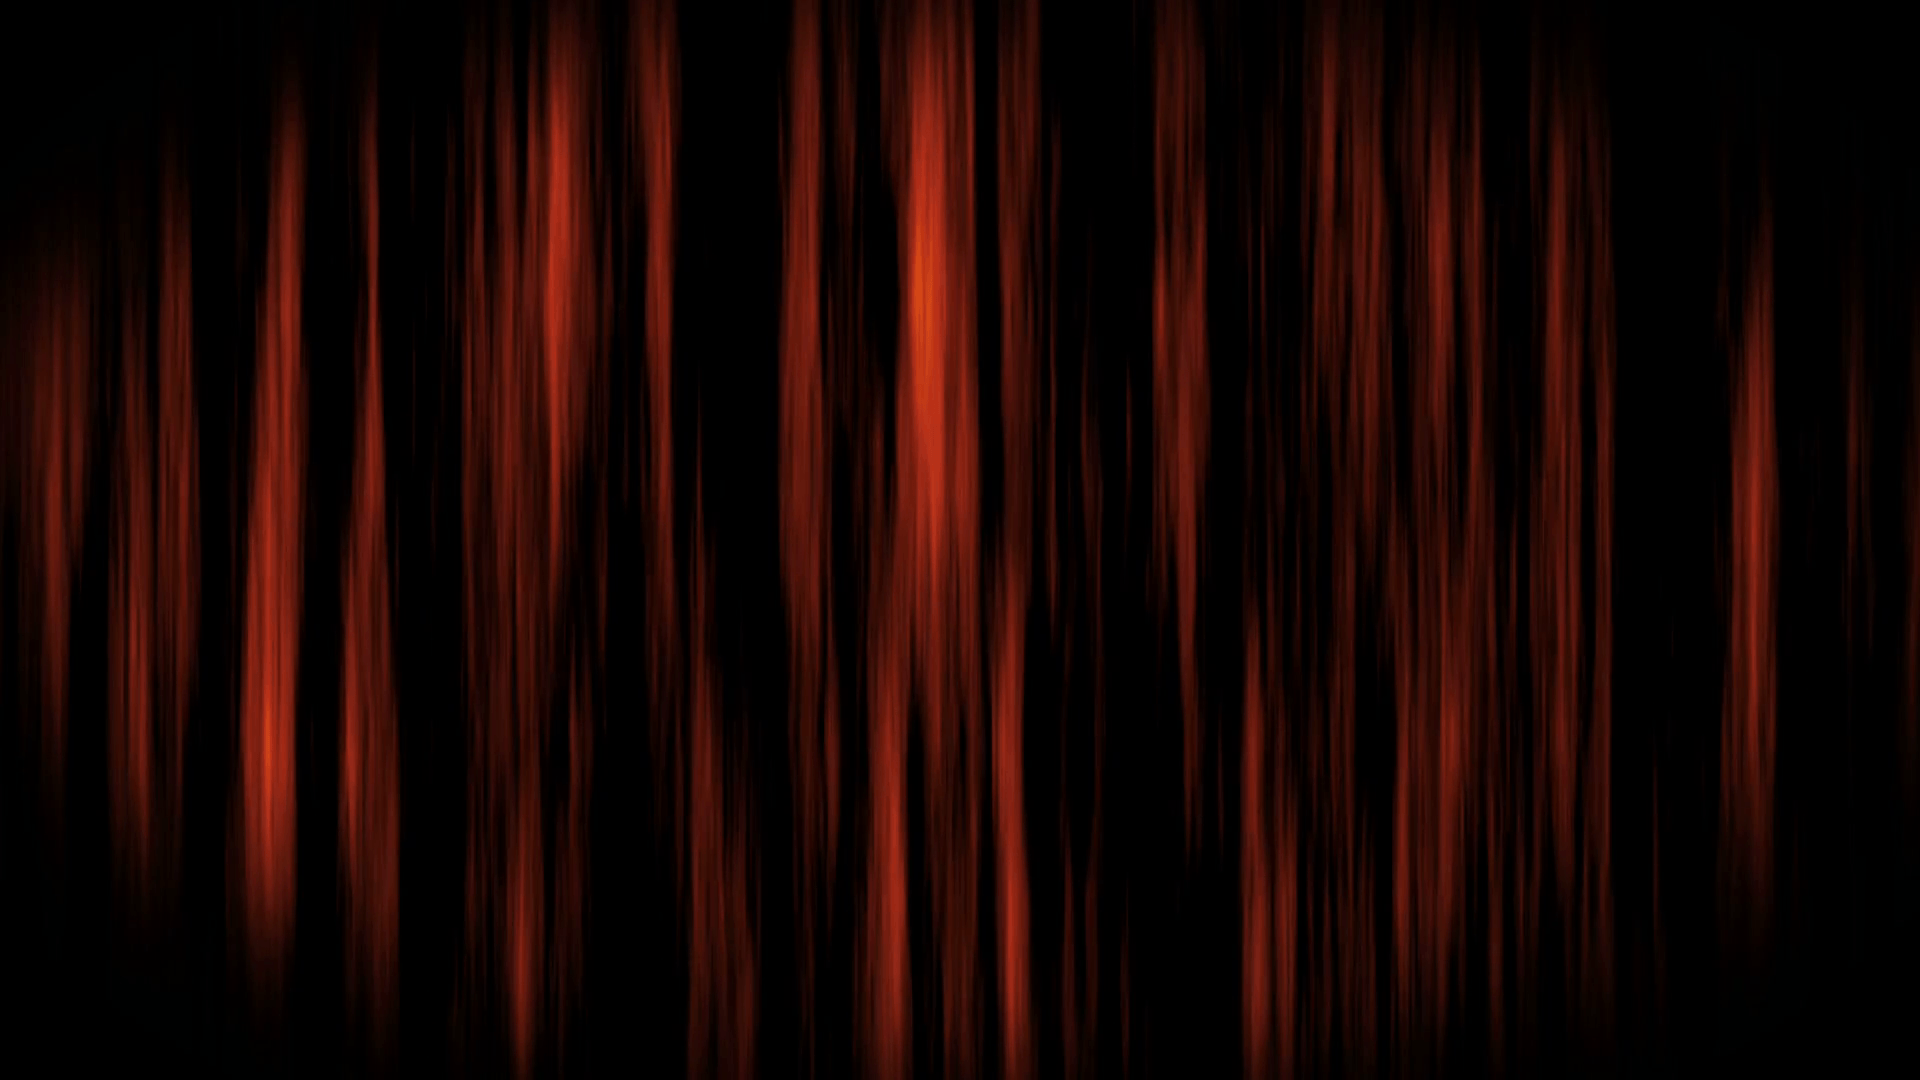 Spooky Halloween ghost haunted dark background curtain loop Orange